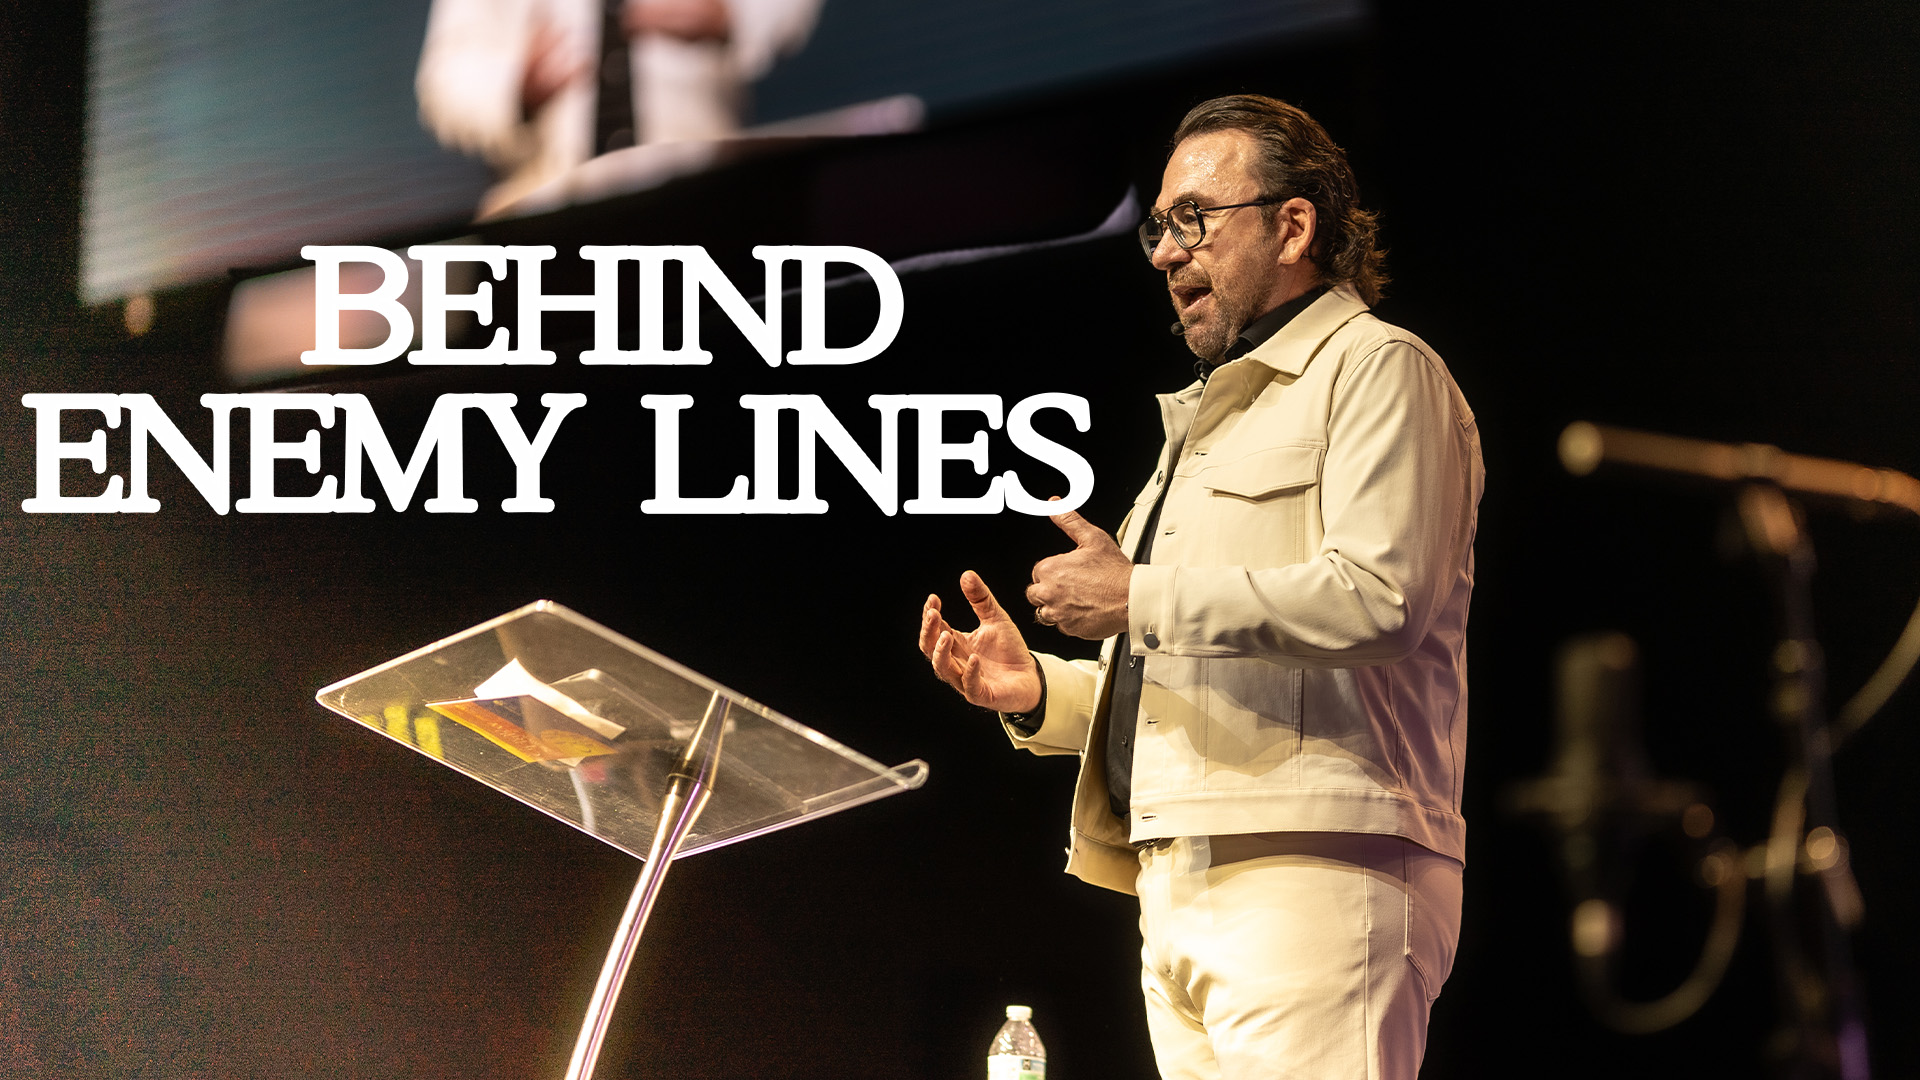 Behind Enemy Lines | Apostle Jim Raley